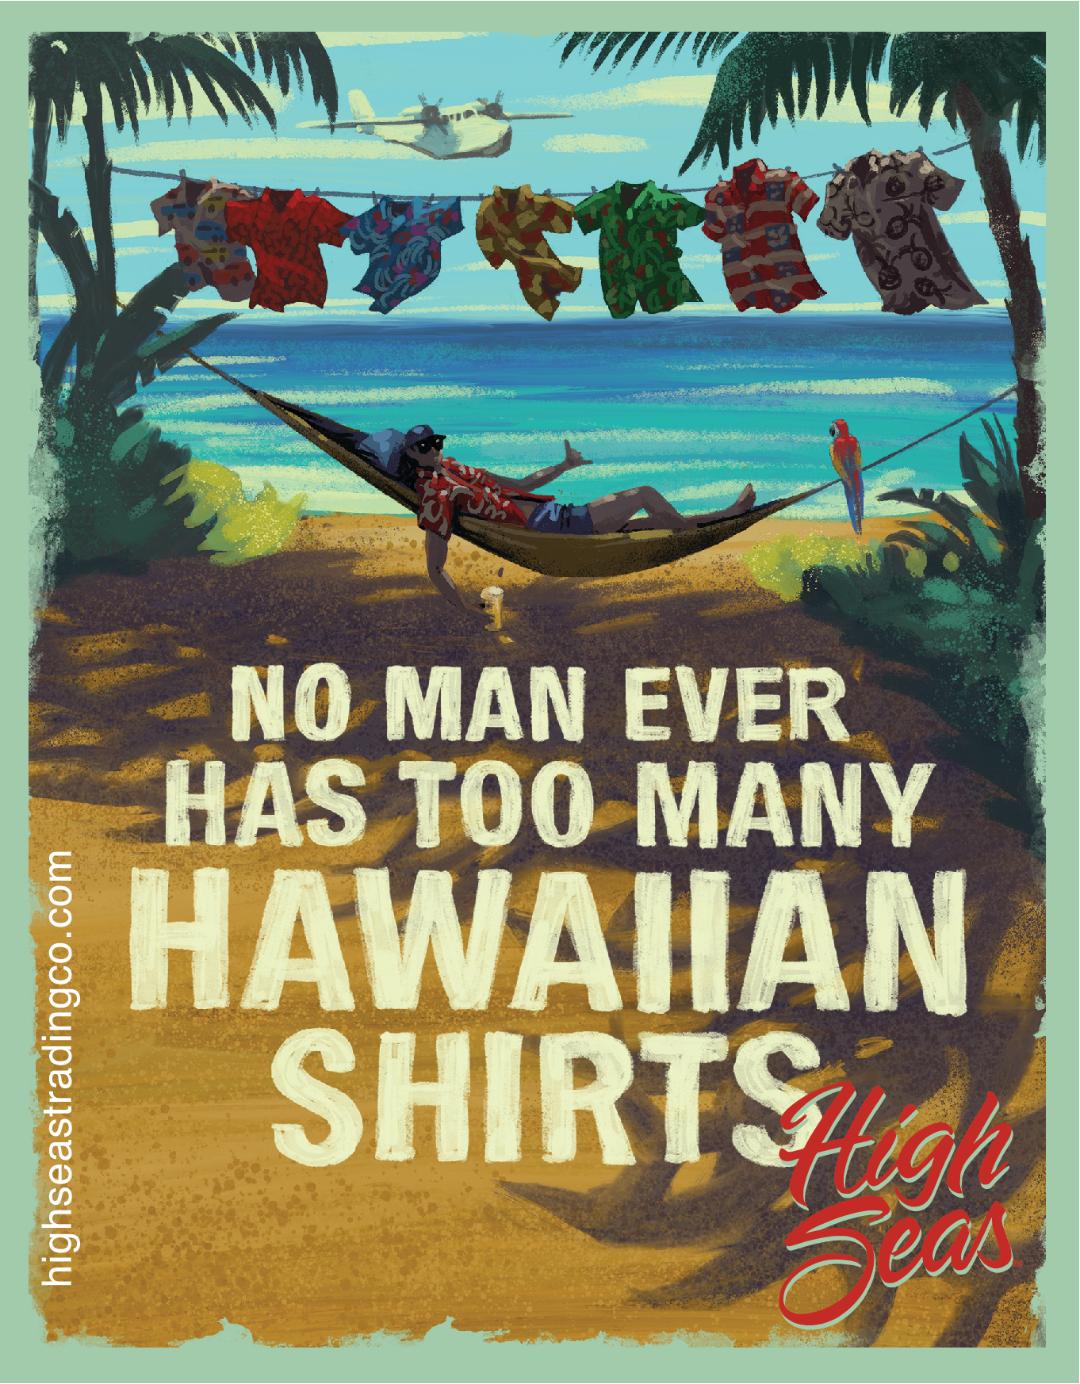 No man has too many Hawaiian Shirts